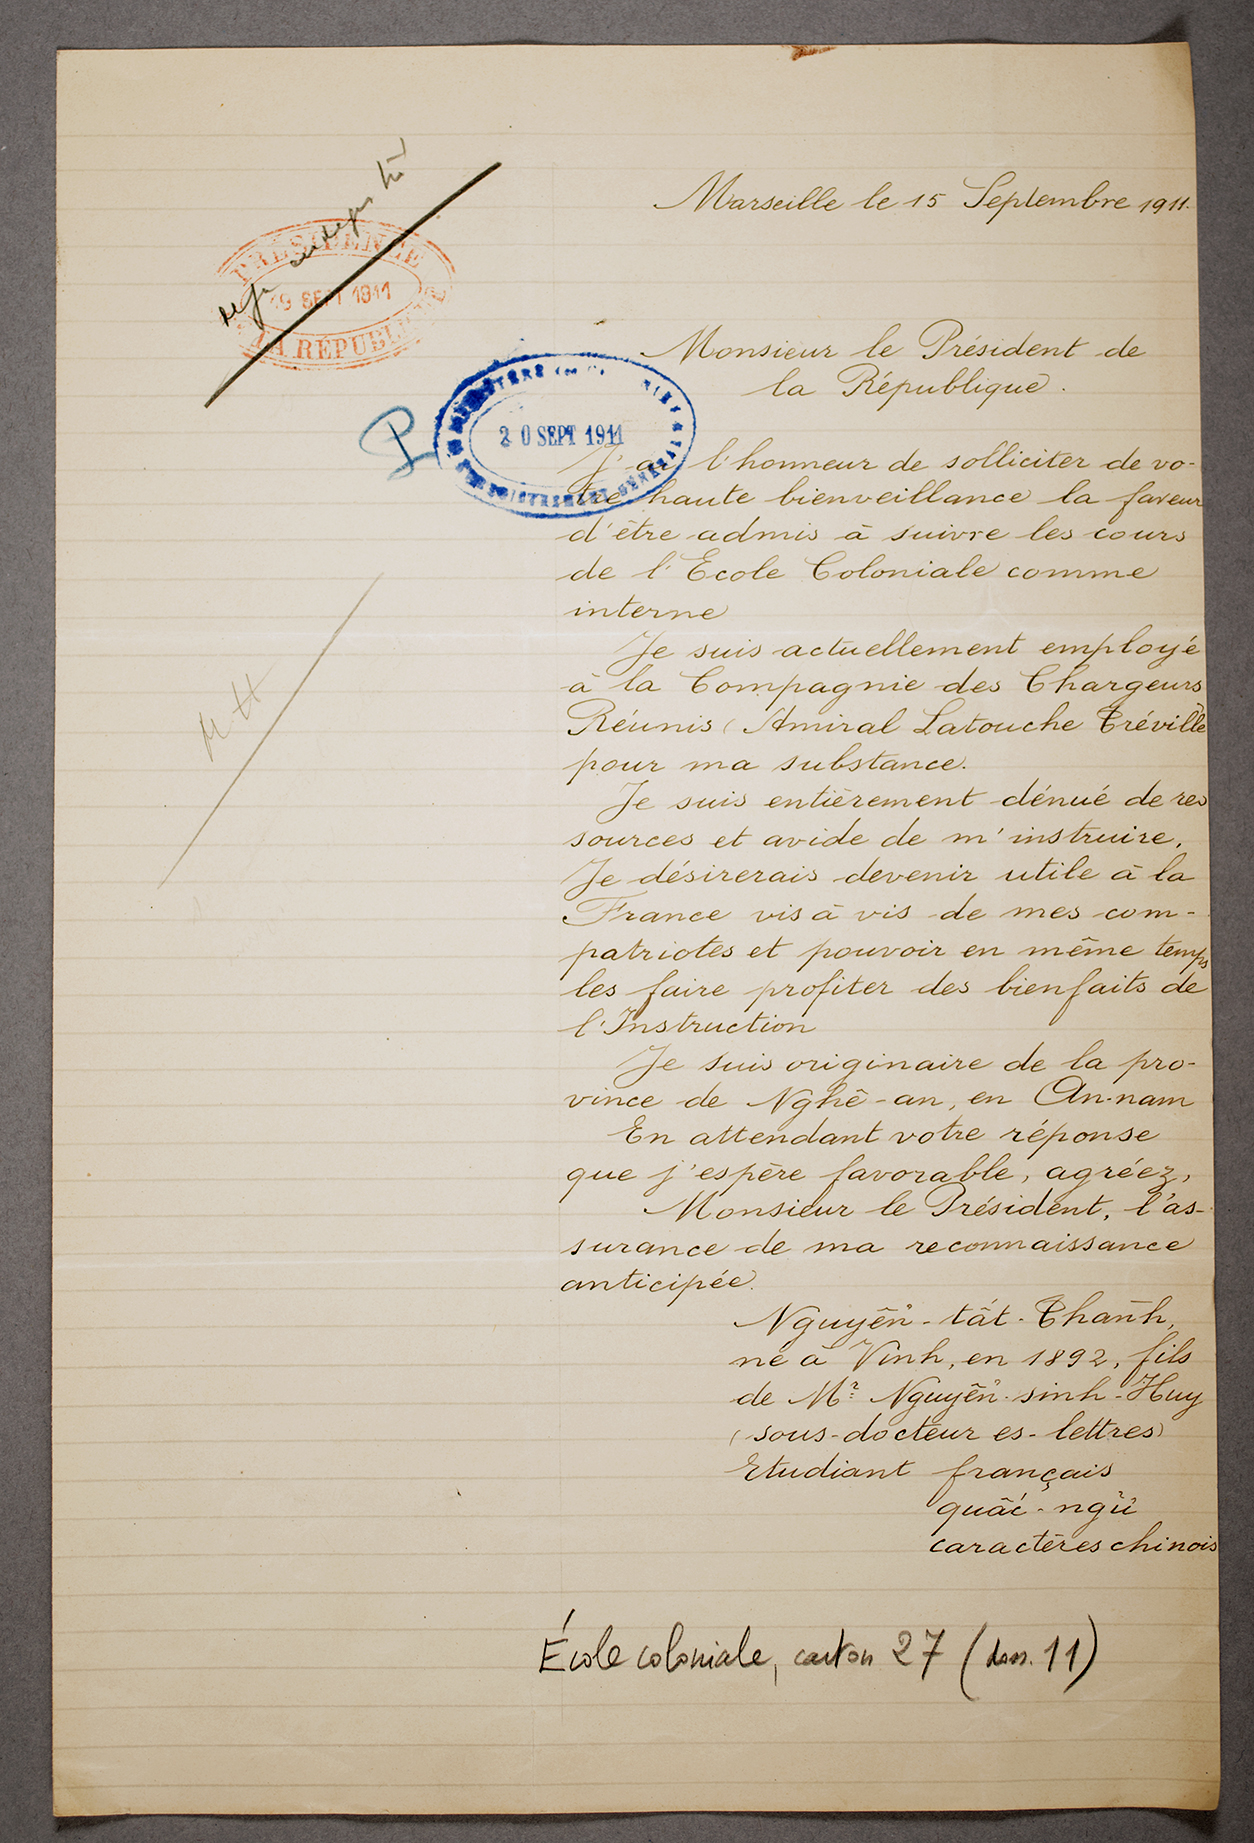 ECOL 27 : Lettre de Nguyen Tât Thanh au président de la République, Marseille, le 15 septembre 1911 (copie), fonds École coloniale